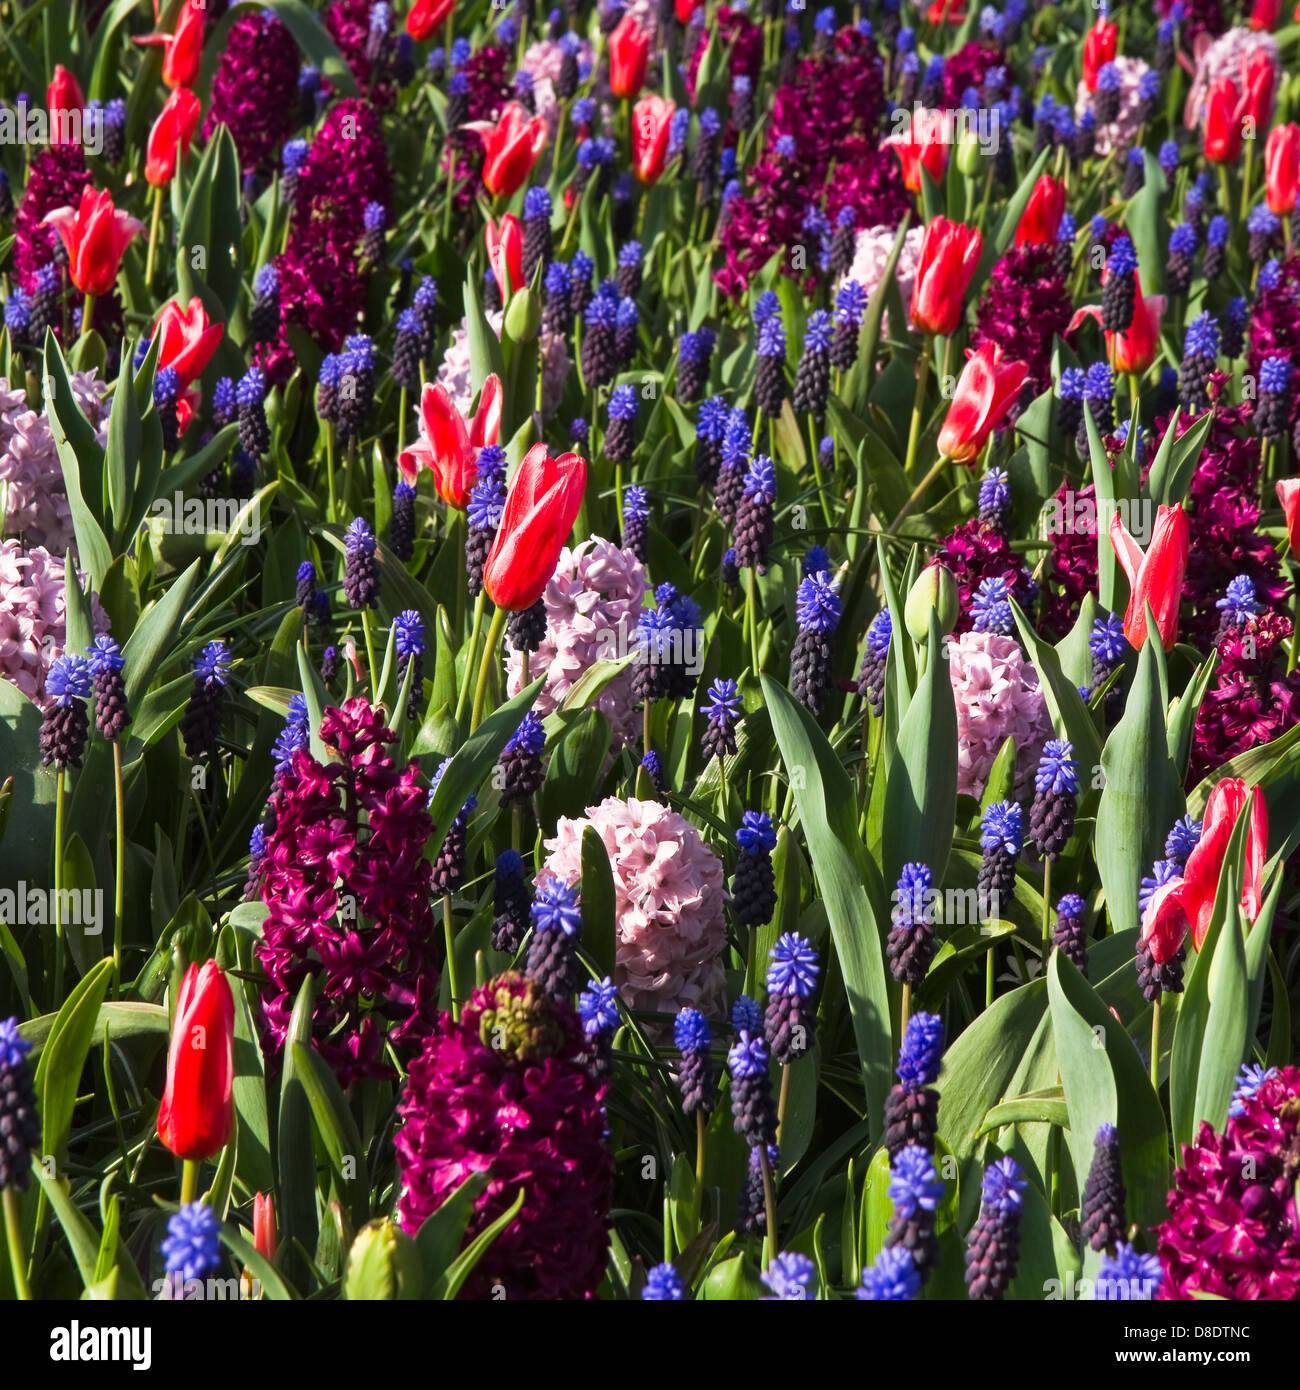 Gobelin des Frühlings Blumen - Tulpen, Hyazinthen und Trauben Hyazinthen in kühlen Farben Stockfoto